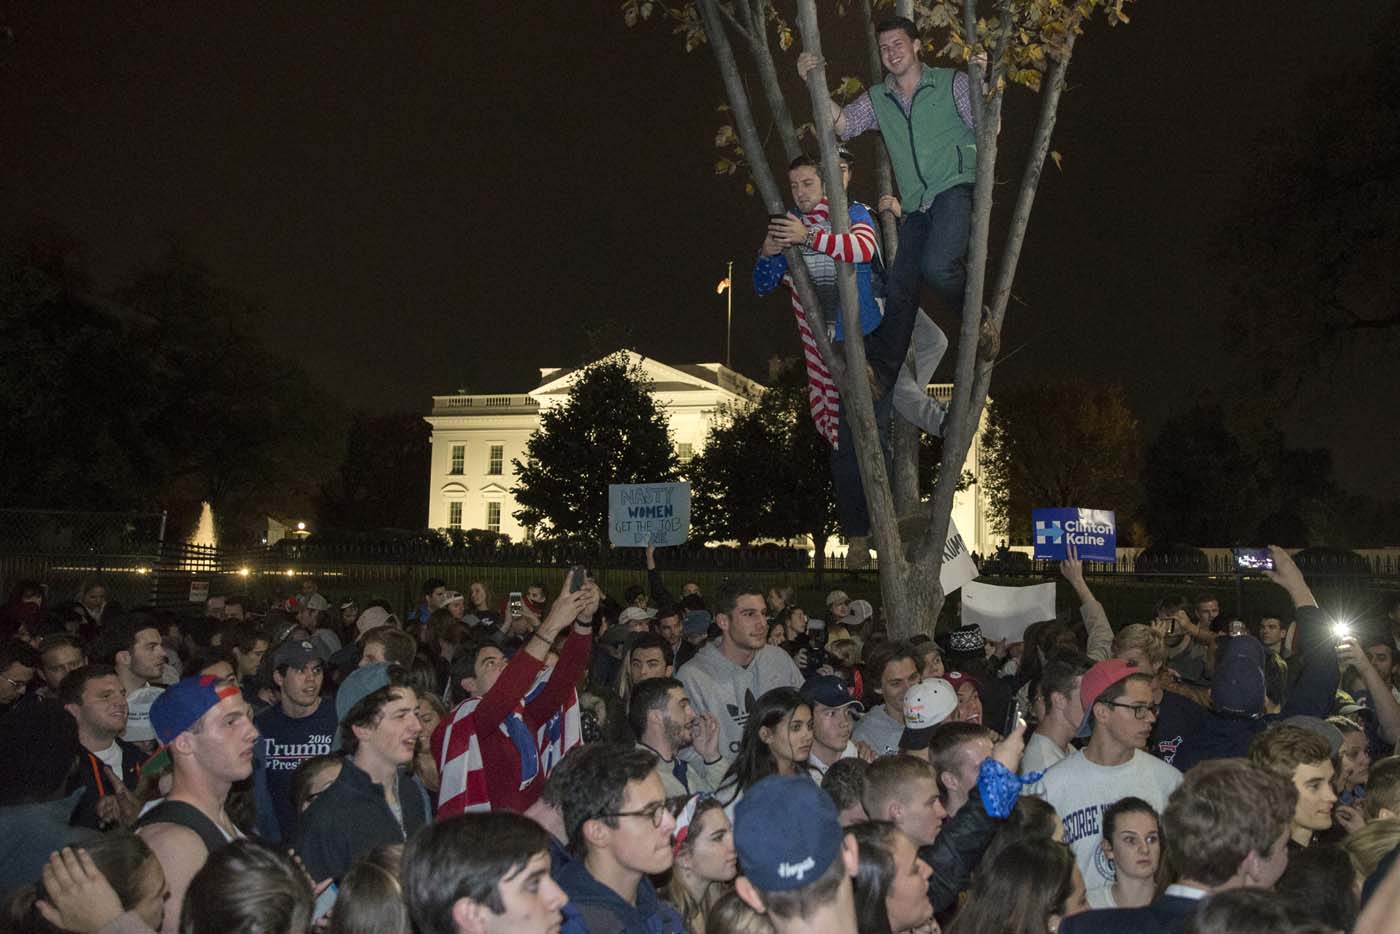 División e incredulidad frente a la Casa Blanca (fotos)